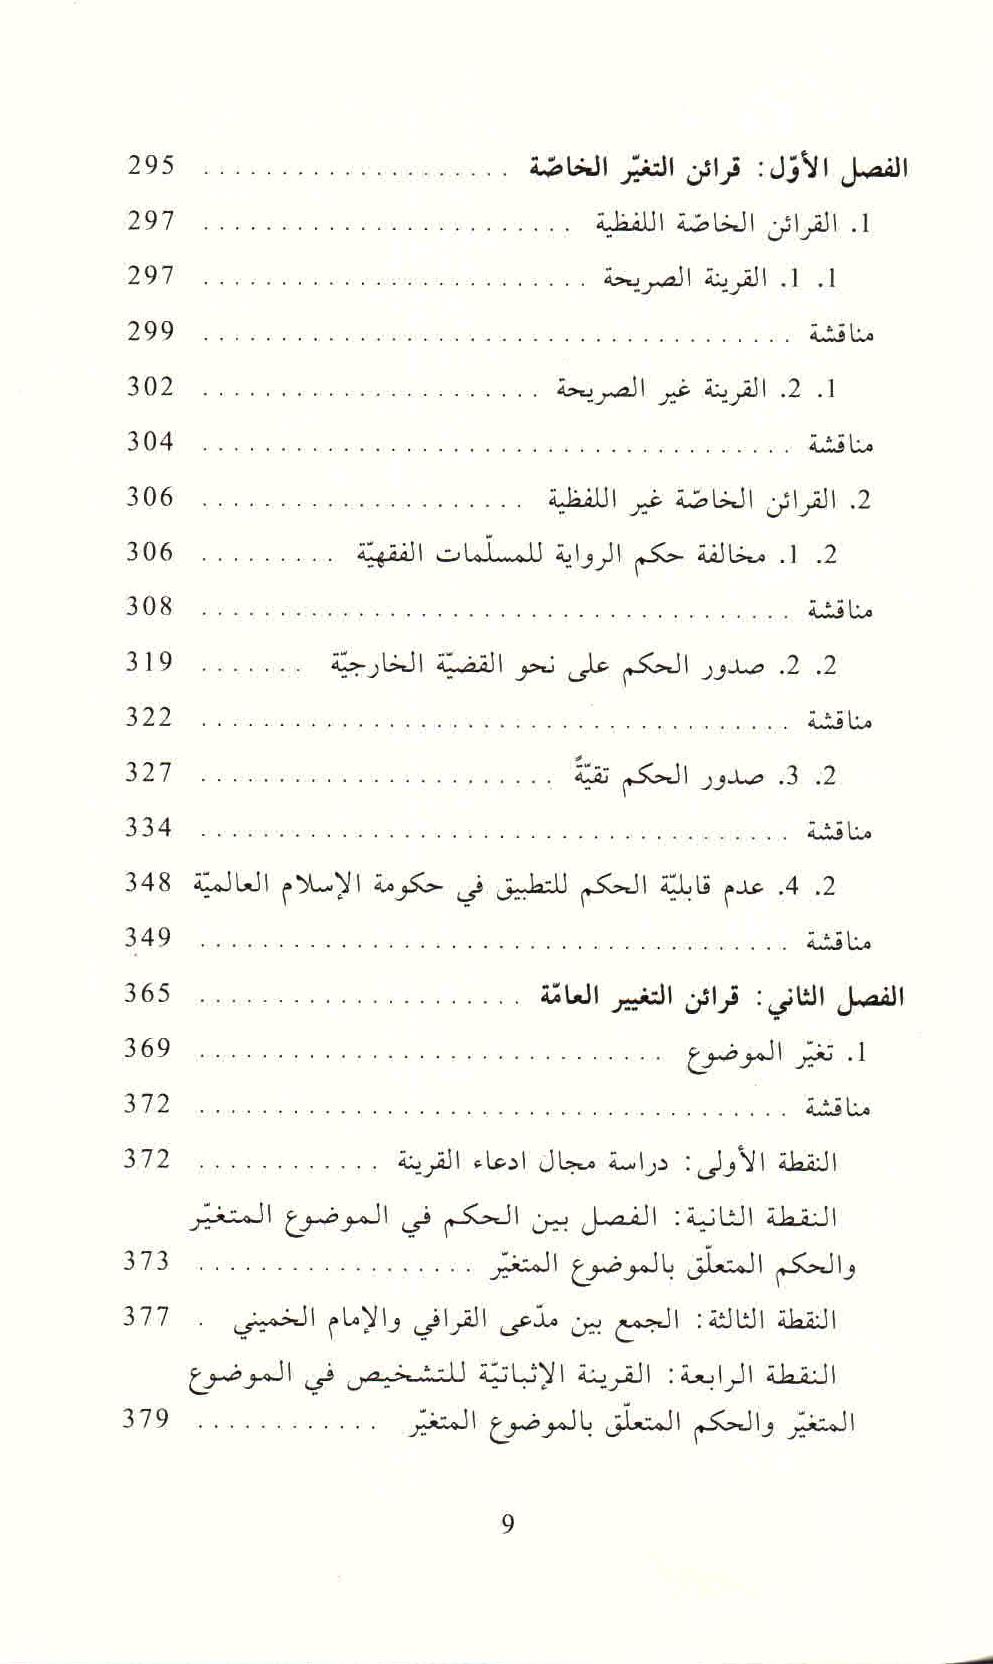 ص. 9 قائمة محتويات كتاب الثابت والمتغير في الأدلة النصية